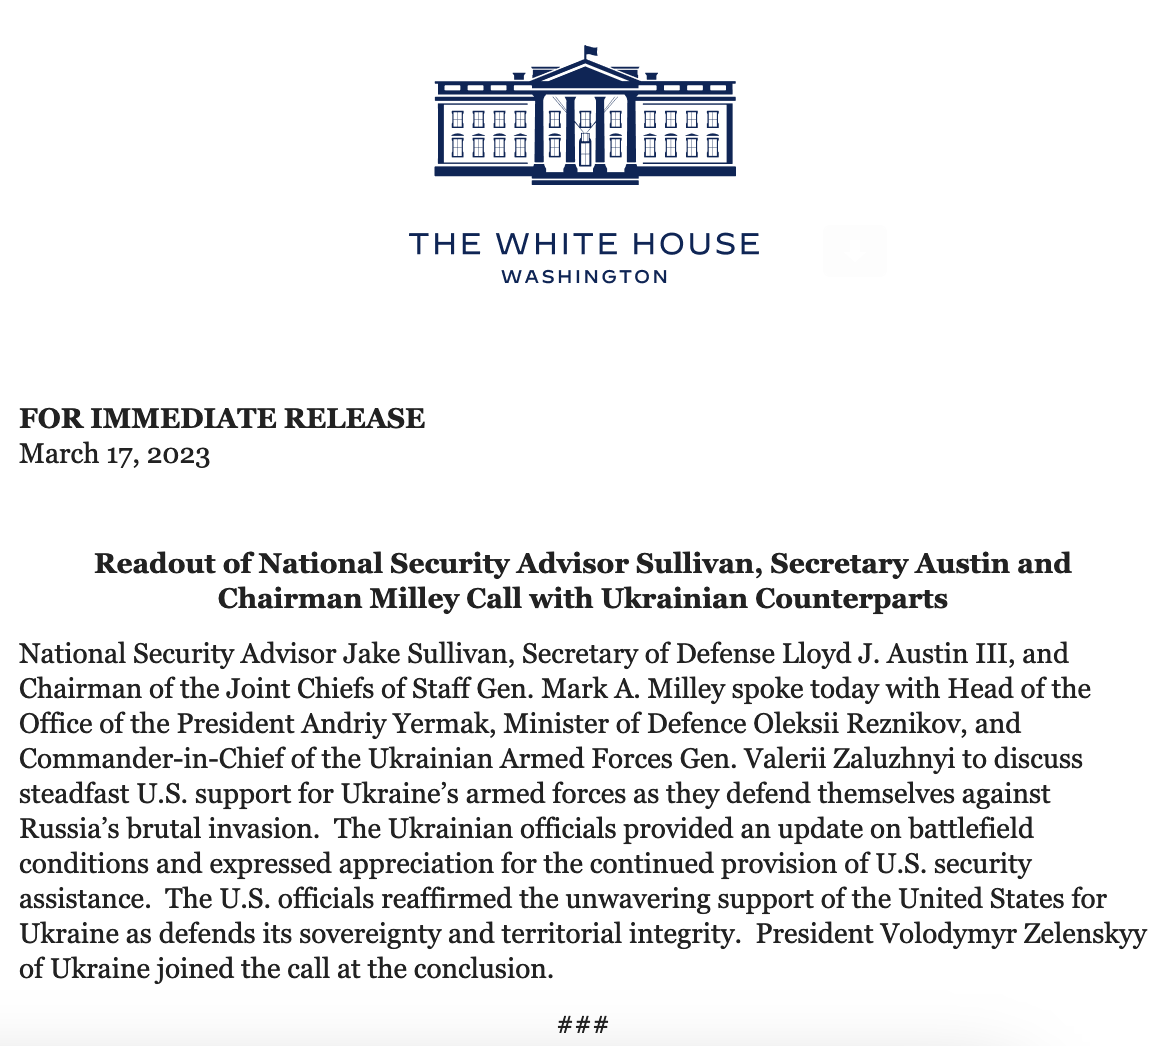 NSC Sullivan, @SecDef Austin und der Vorsitzende Milley sprachen mit ukrainischen Kollegen. Präsident @ZelenskyyUa schloss sich dem Aufruf am Ende des Weißen Hauses an